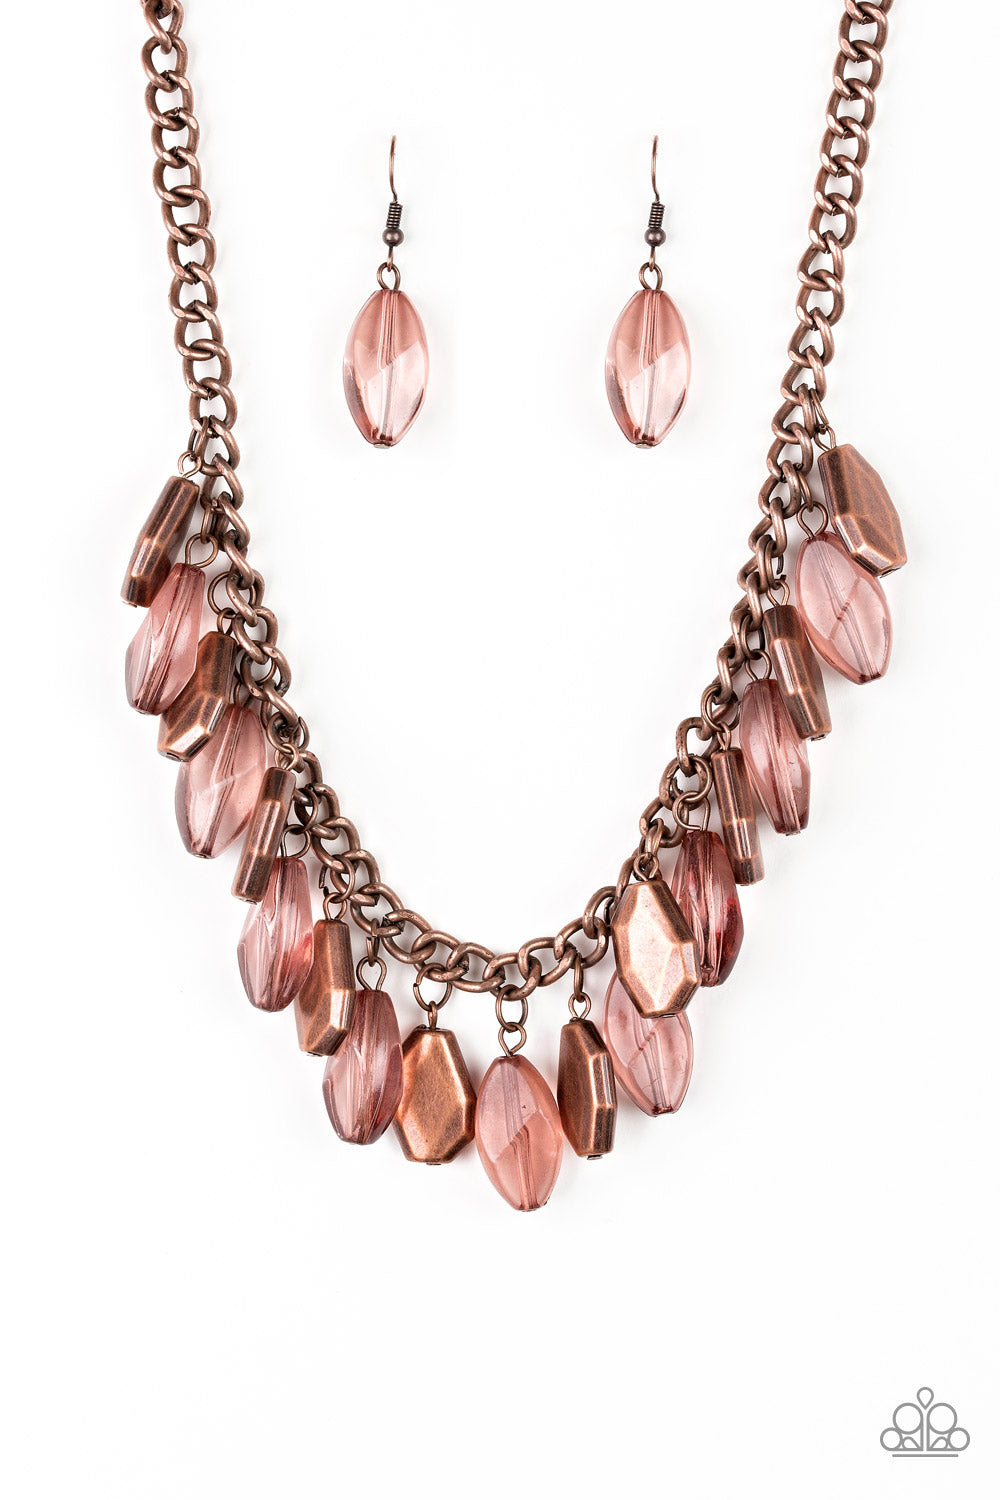 Paparazzi Accessories Fringe Fabulous - Copper Necklaces - Lady T Accessories